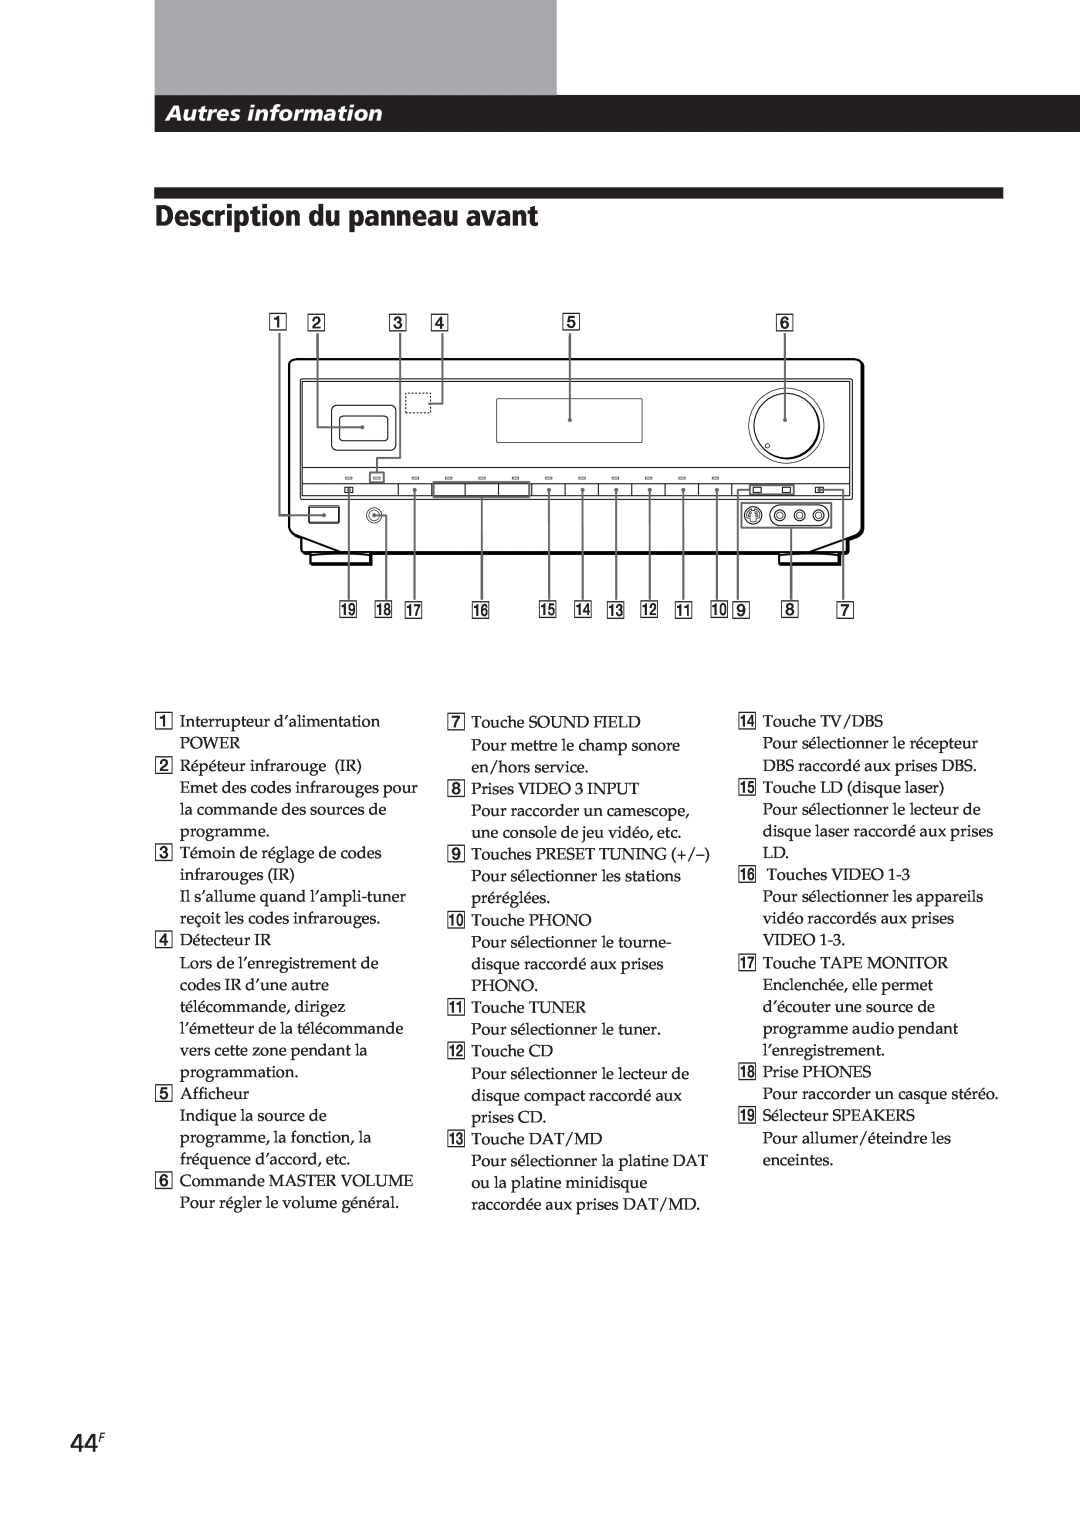 Sony STR-DE905G, STR-DE805G manual Description du panneau avant, Autres information 